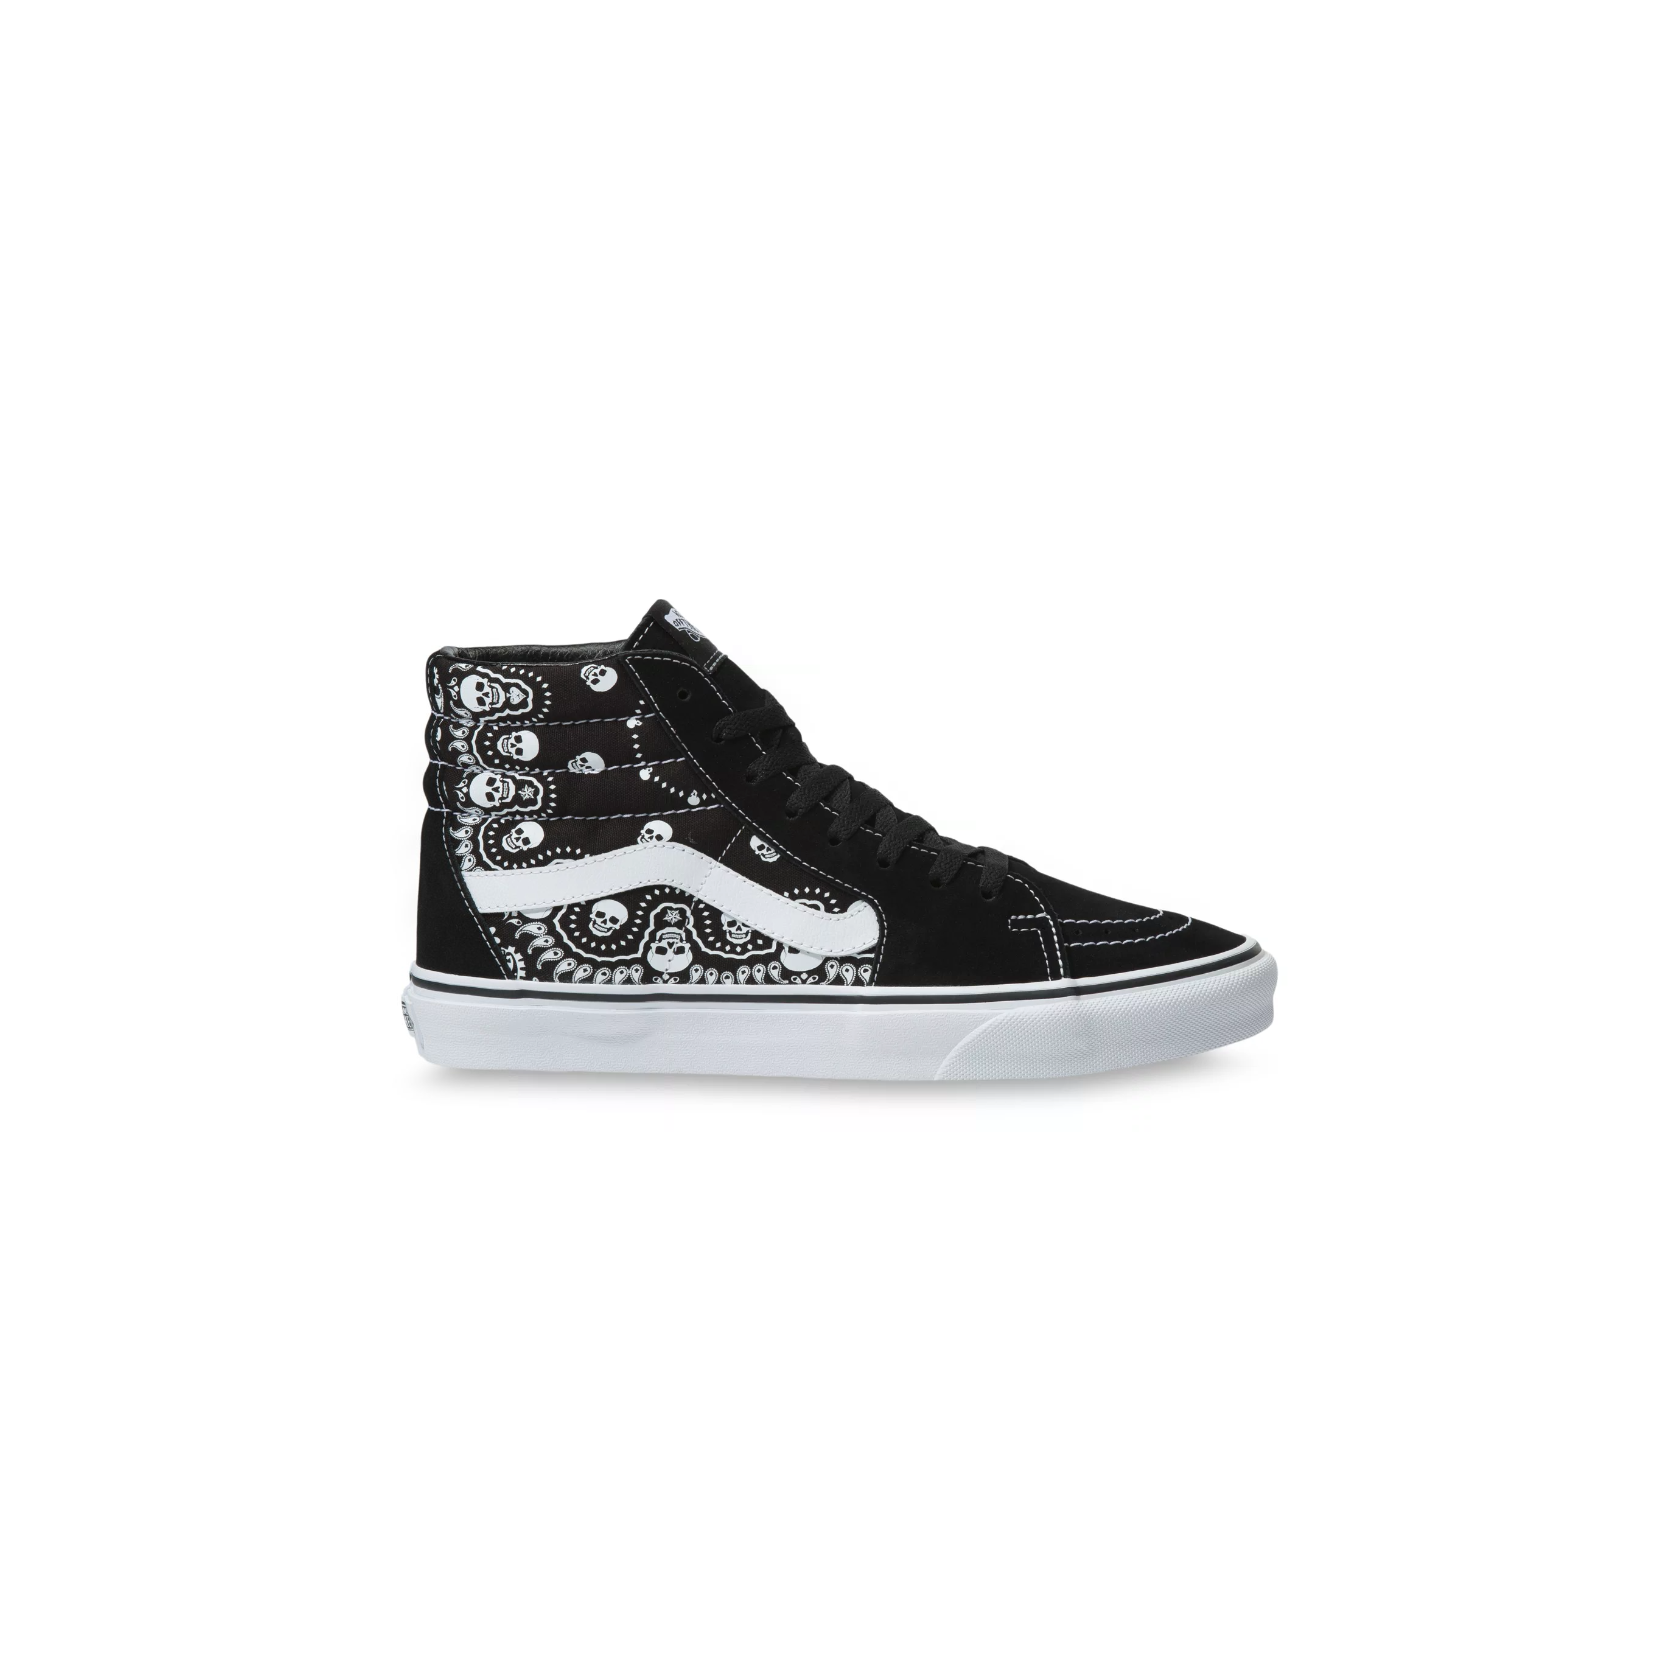 Vans Sk8 Hi Bandana (Black/True White) Skate Shoes Switch Skateboarding